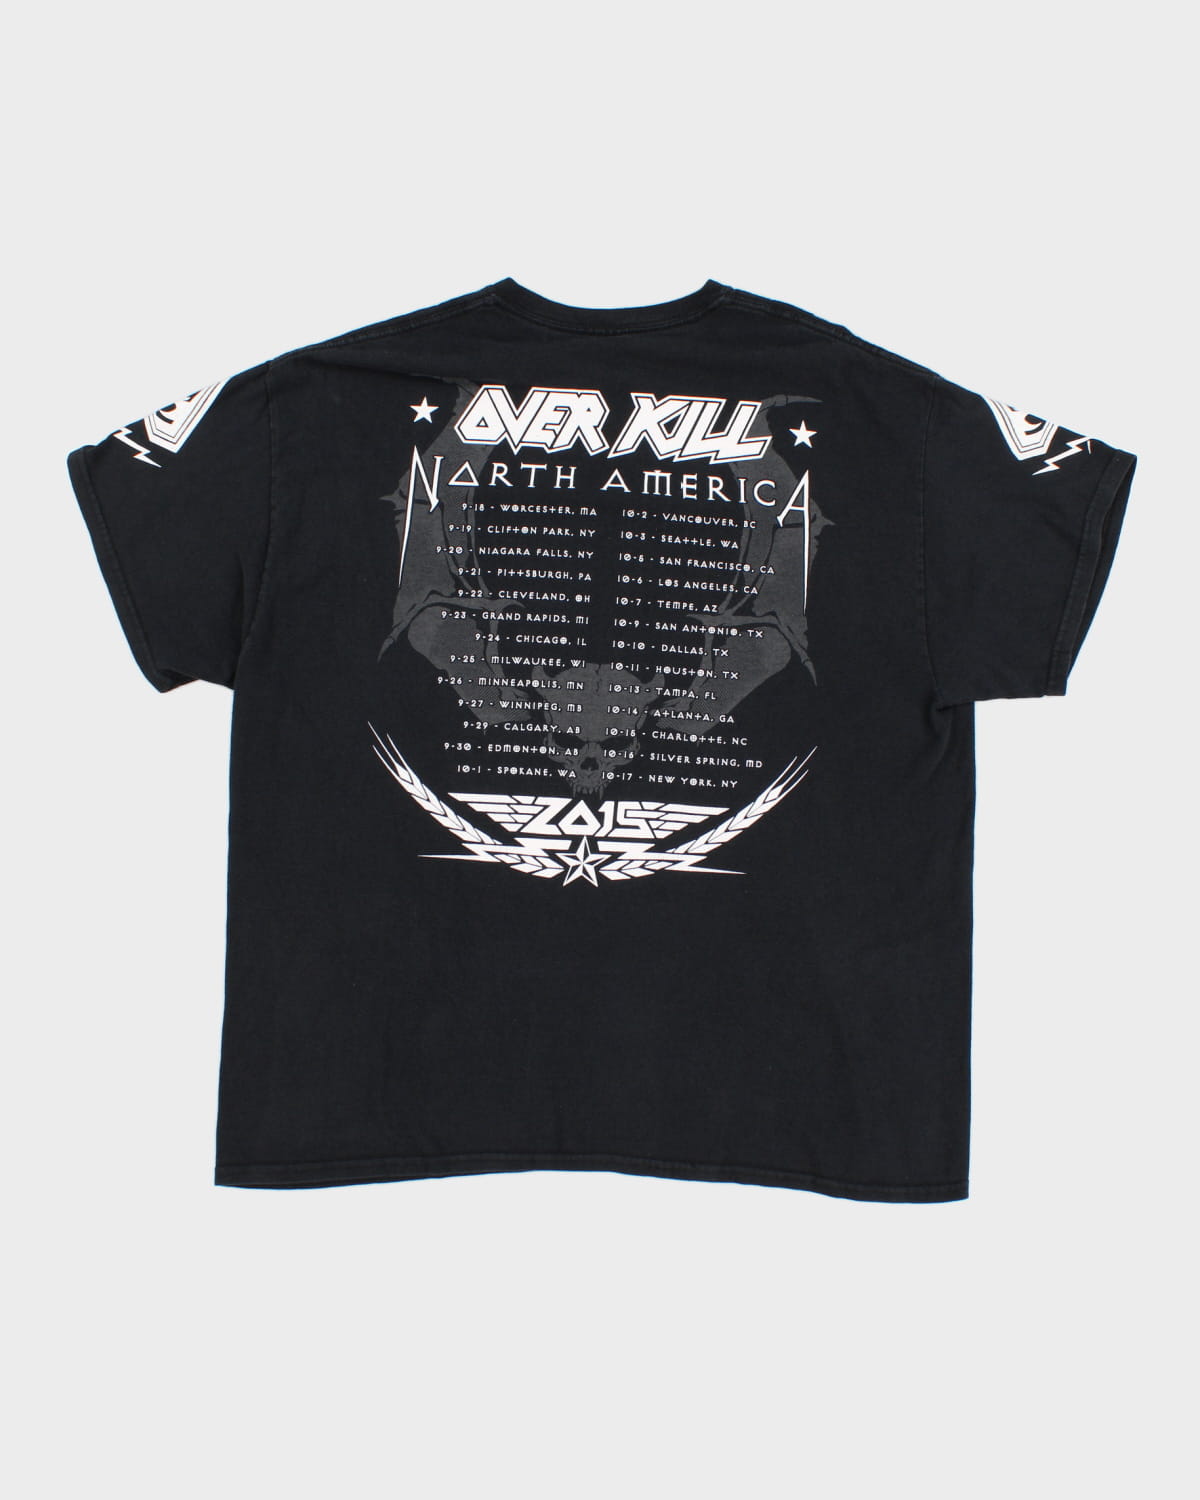 Overkill Tour T-Shirt - XL